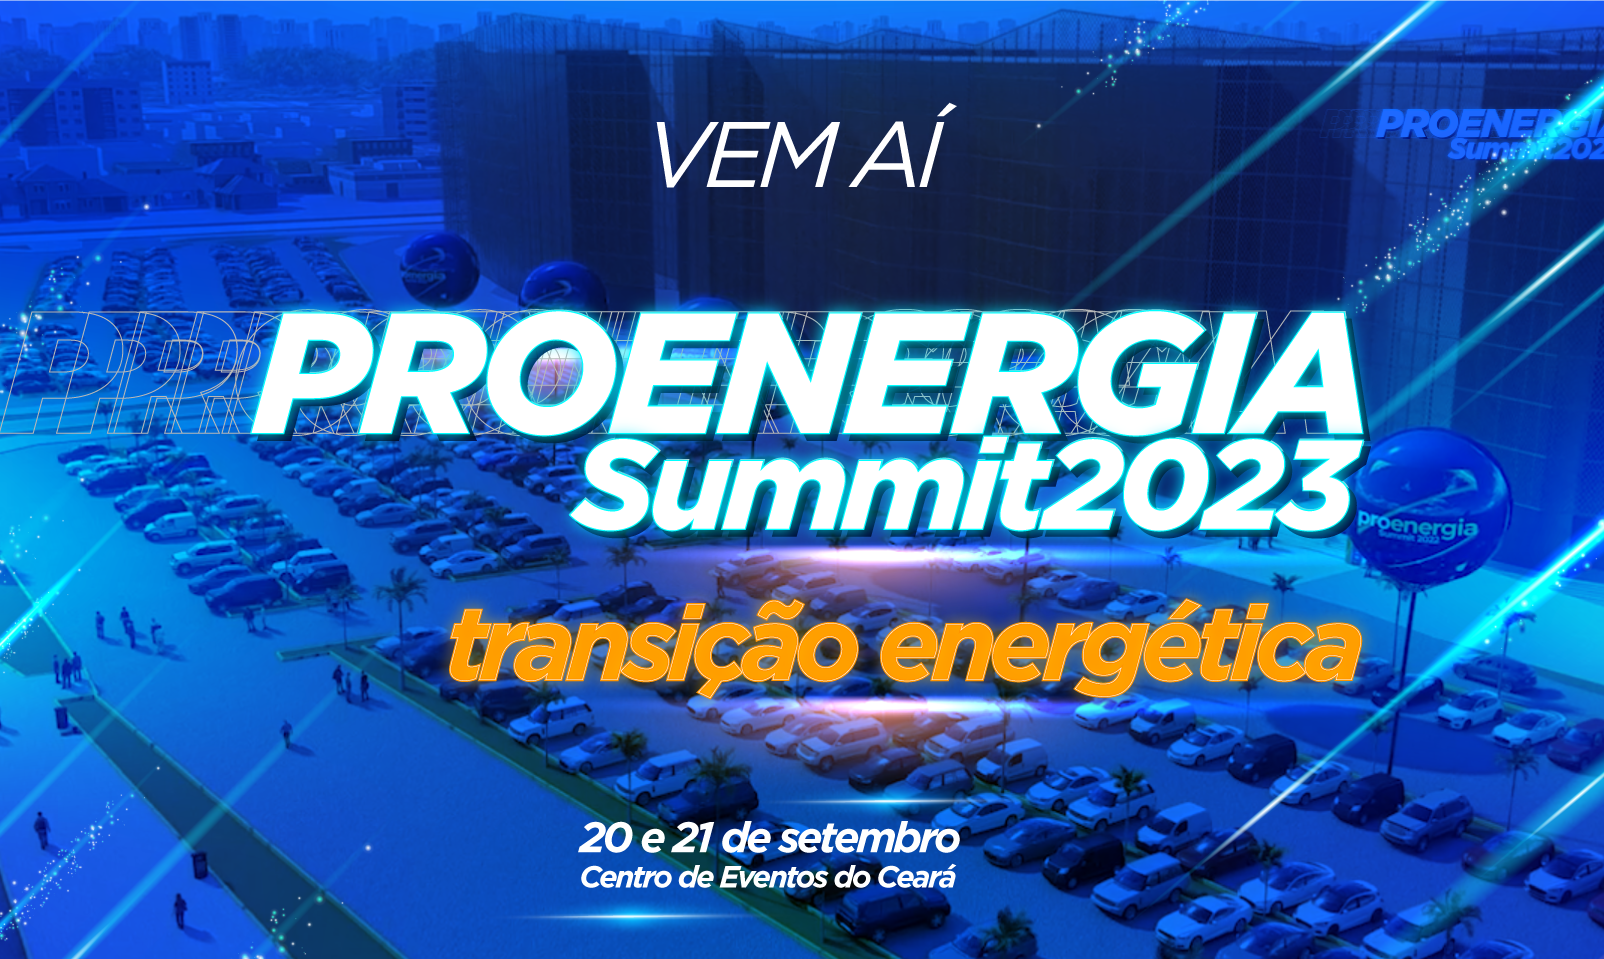  Proenergia Summit retorna com uma proposta ainda maior em 2023